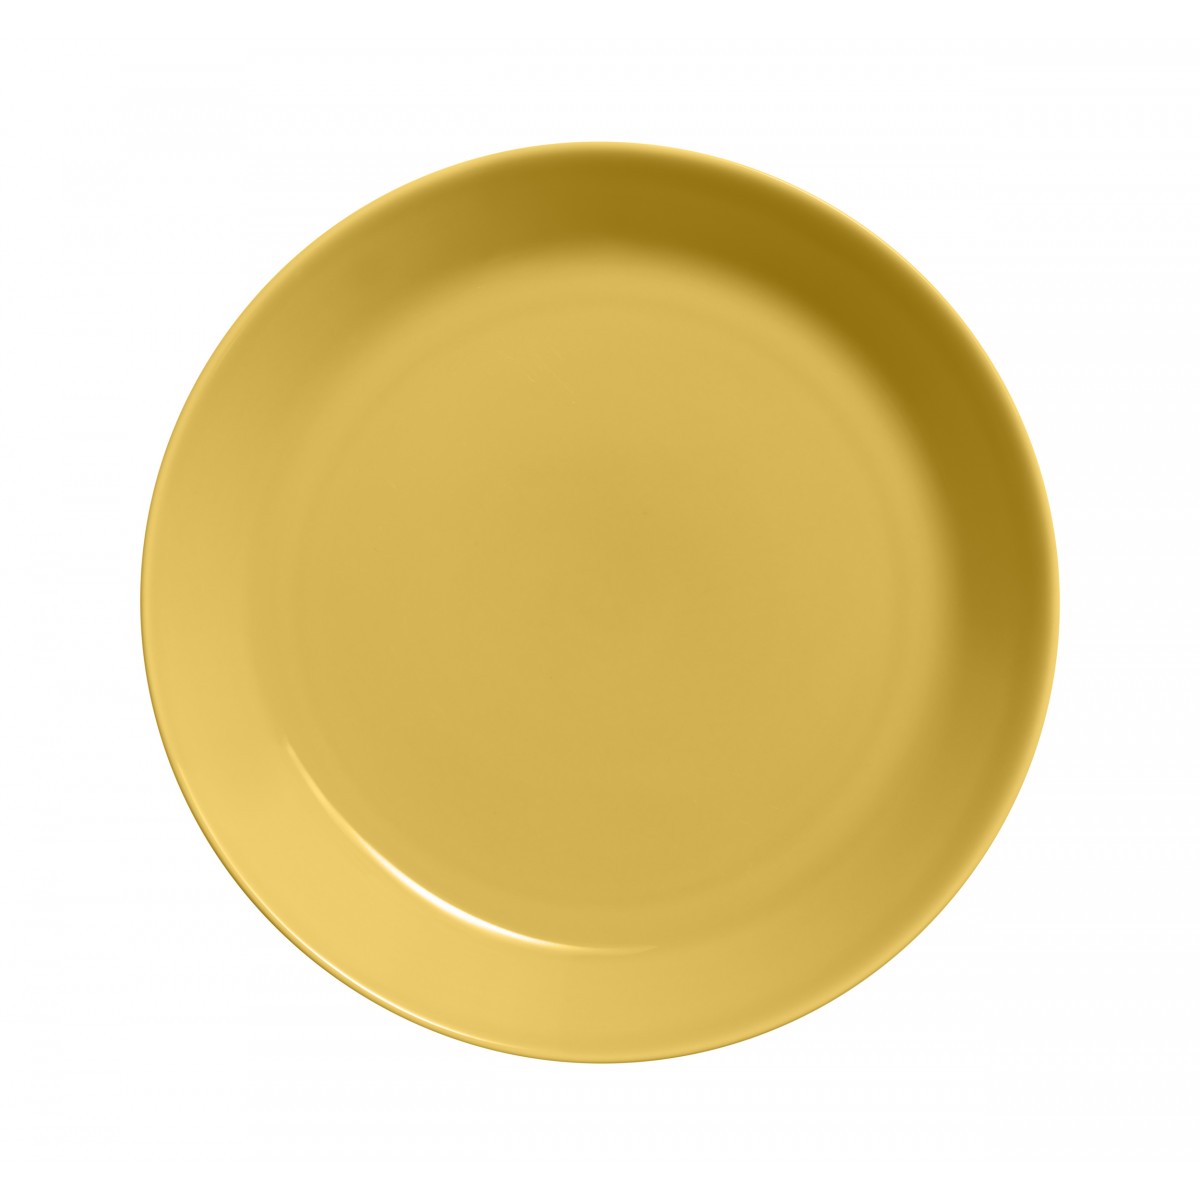 Ø26cm - Teema plate - honey - 1056254